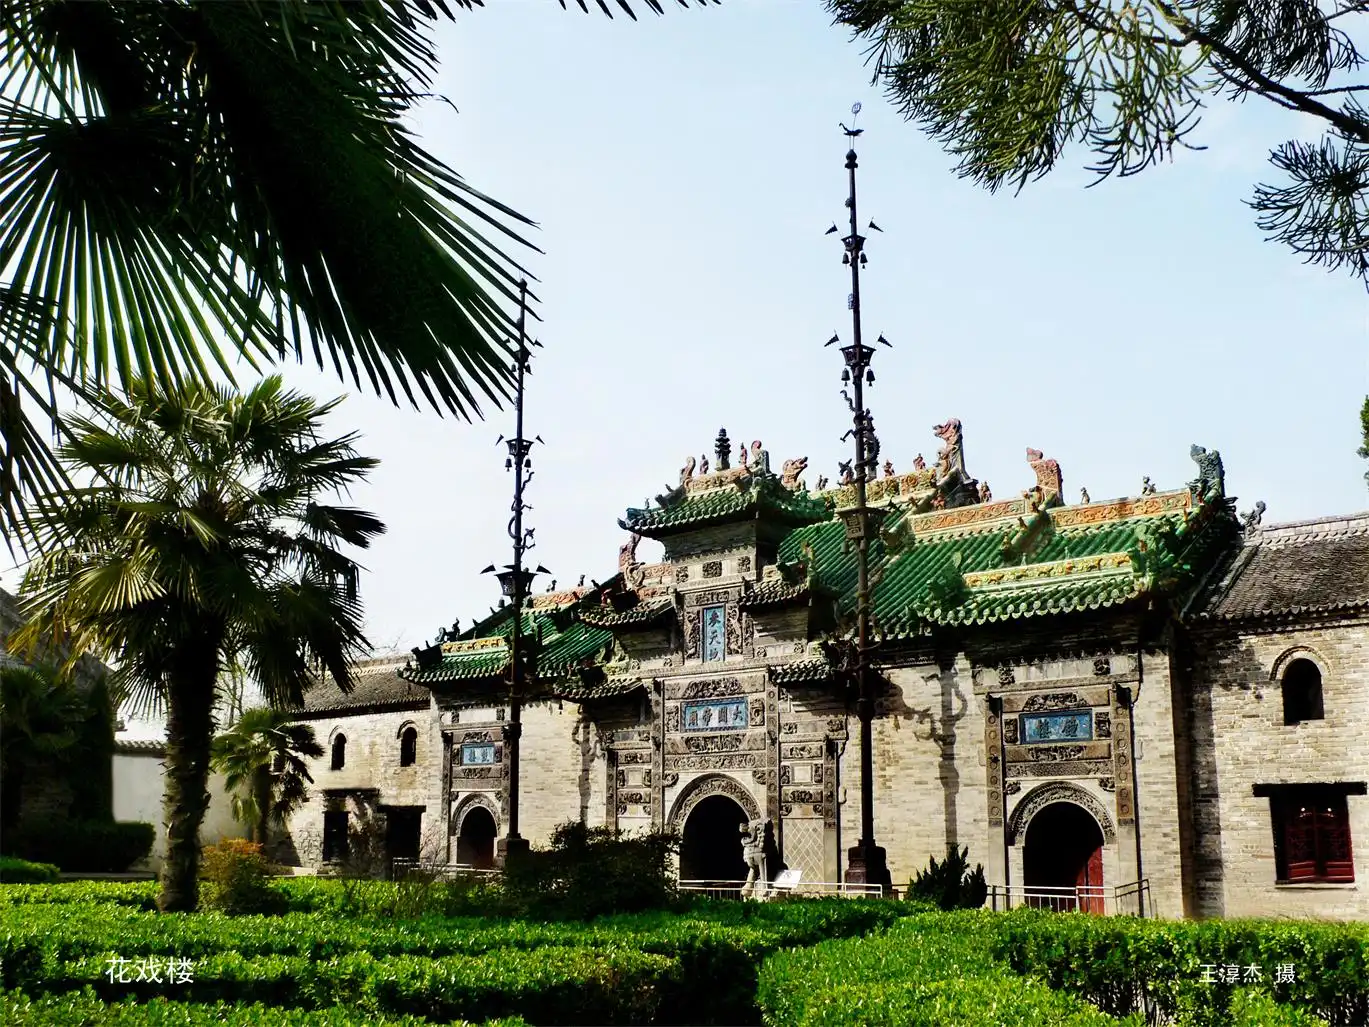 Bozhou tourism